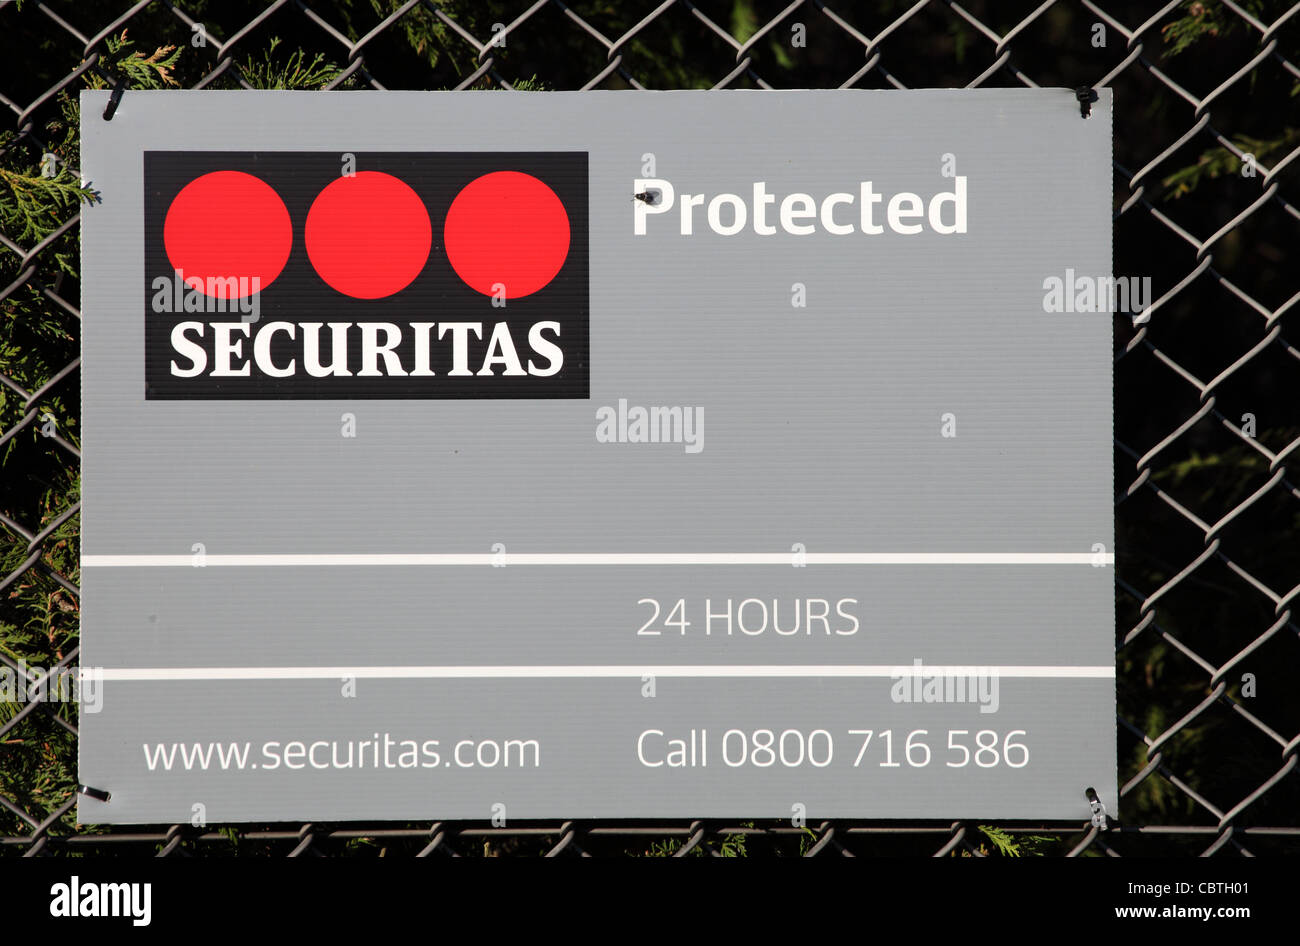 Ein Hinweis angebracht, ein Maschendrahtzaun, die darauf hinweist, dass ein Industriestandort von Securitas geschützt ist. Stockfoto